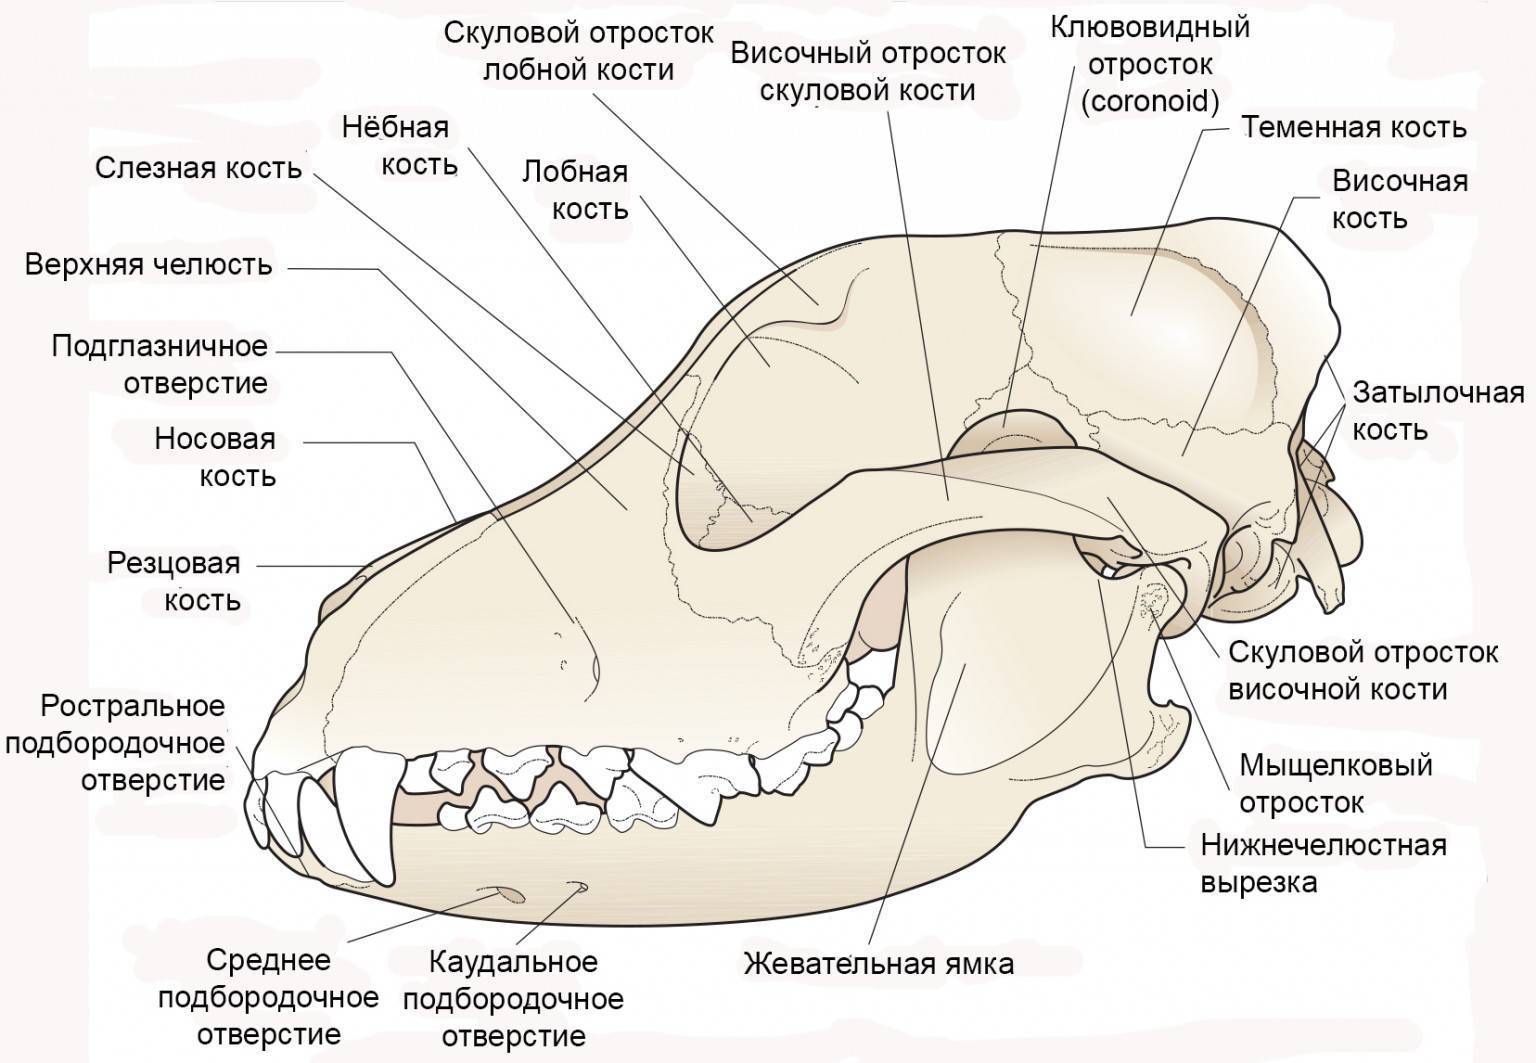 Верхняя челюсть собаки анатомия